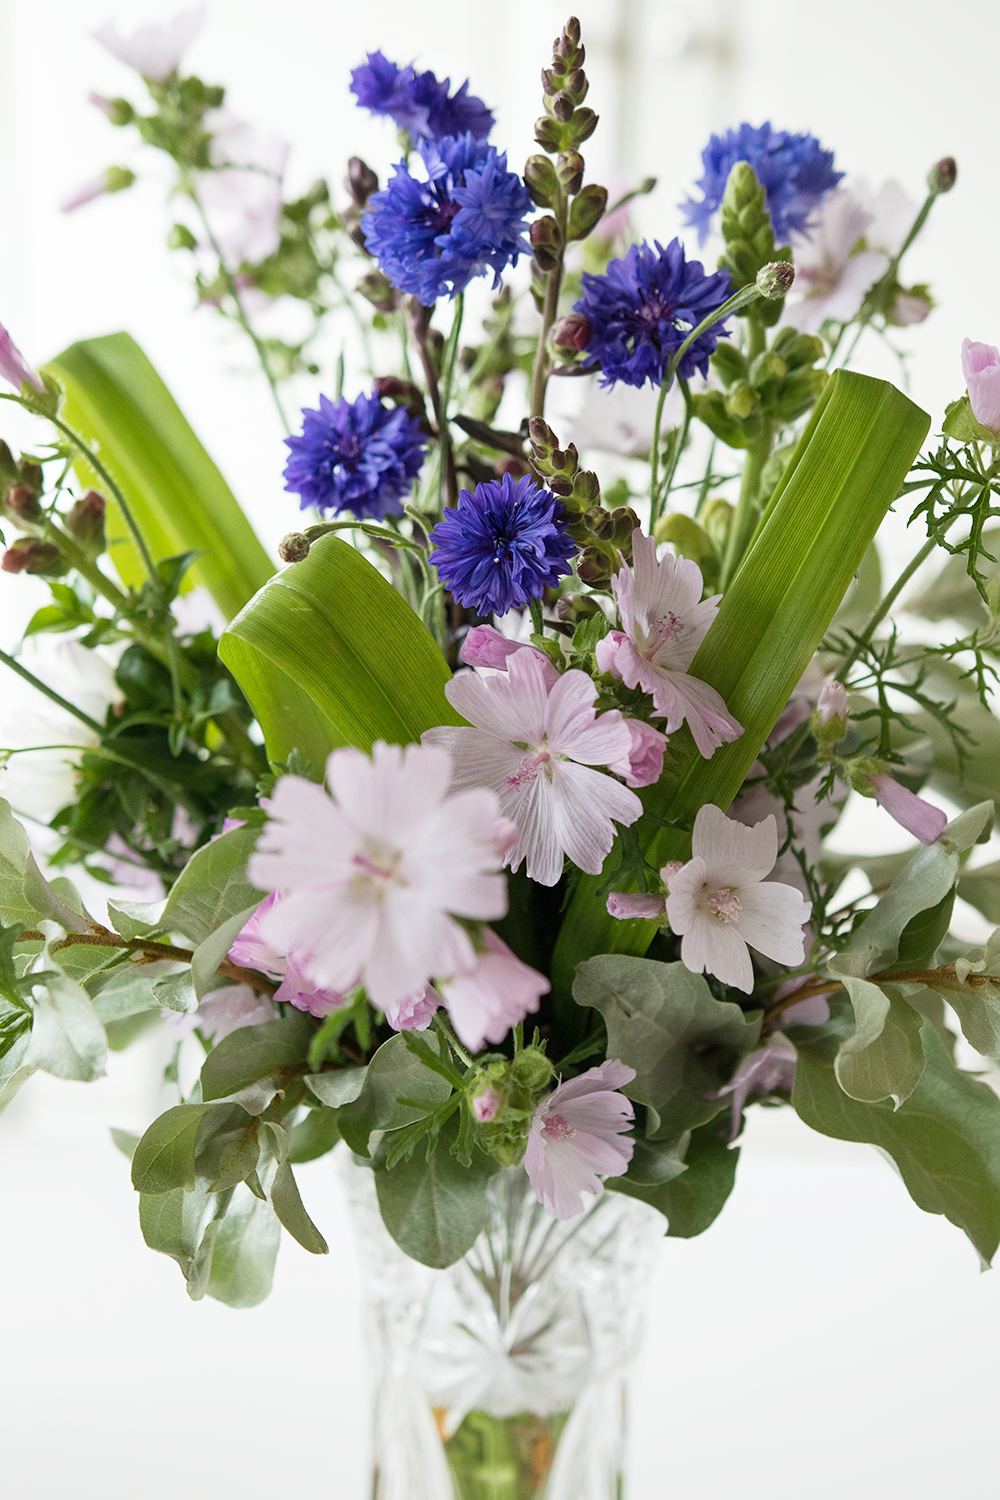 Nu erbjuder Vackra Buketter närproducerade blommor